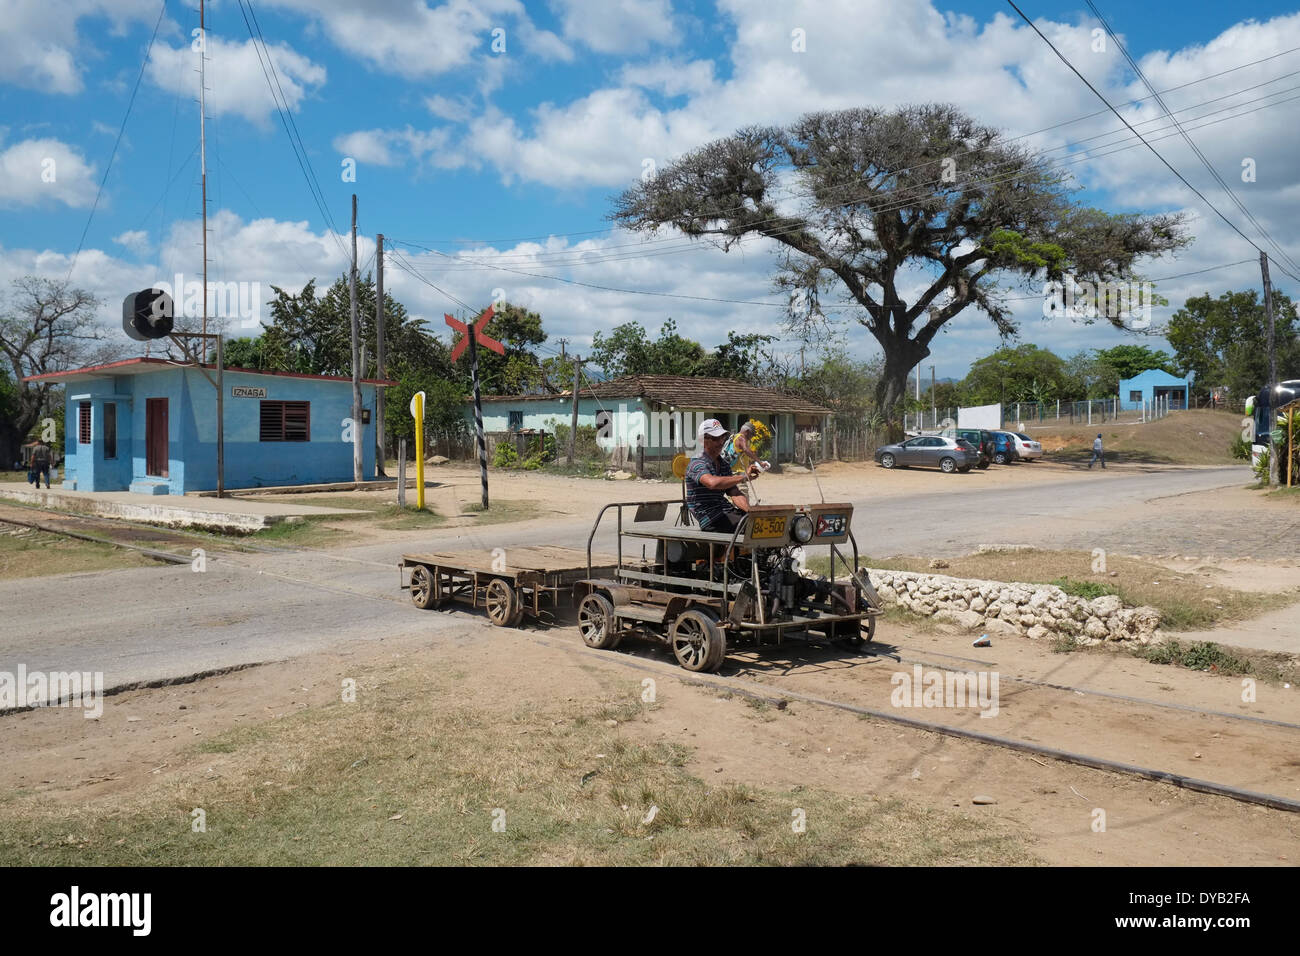 Handcar motorisé à Manaca Iznaga, Trinidad, Cuba. Banque D'Images